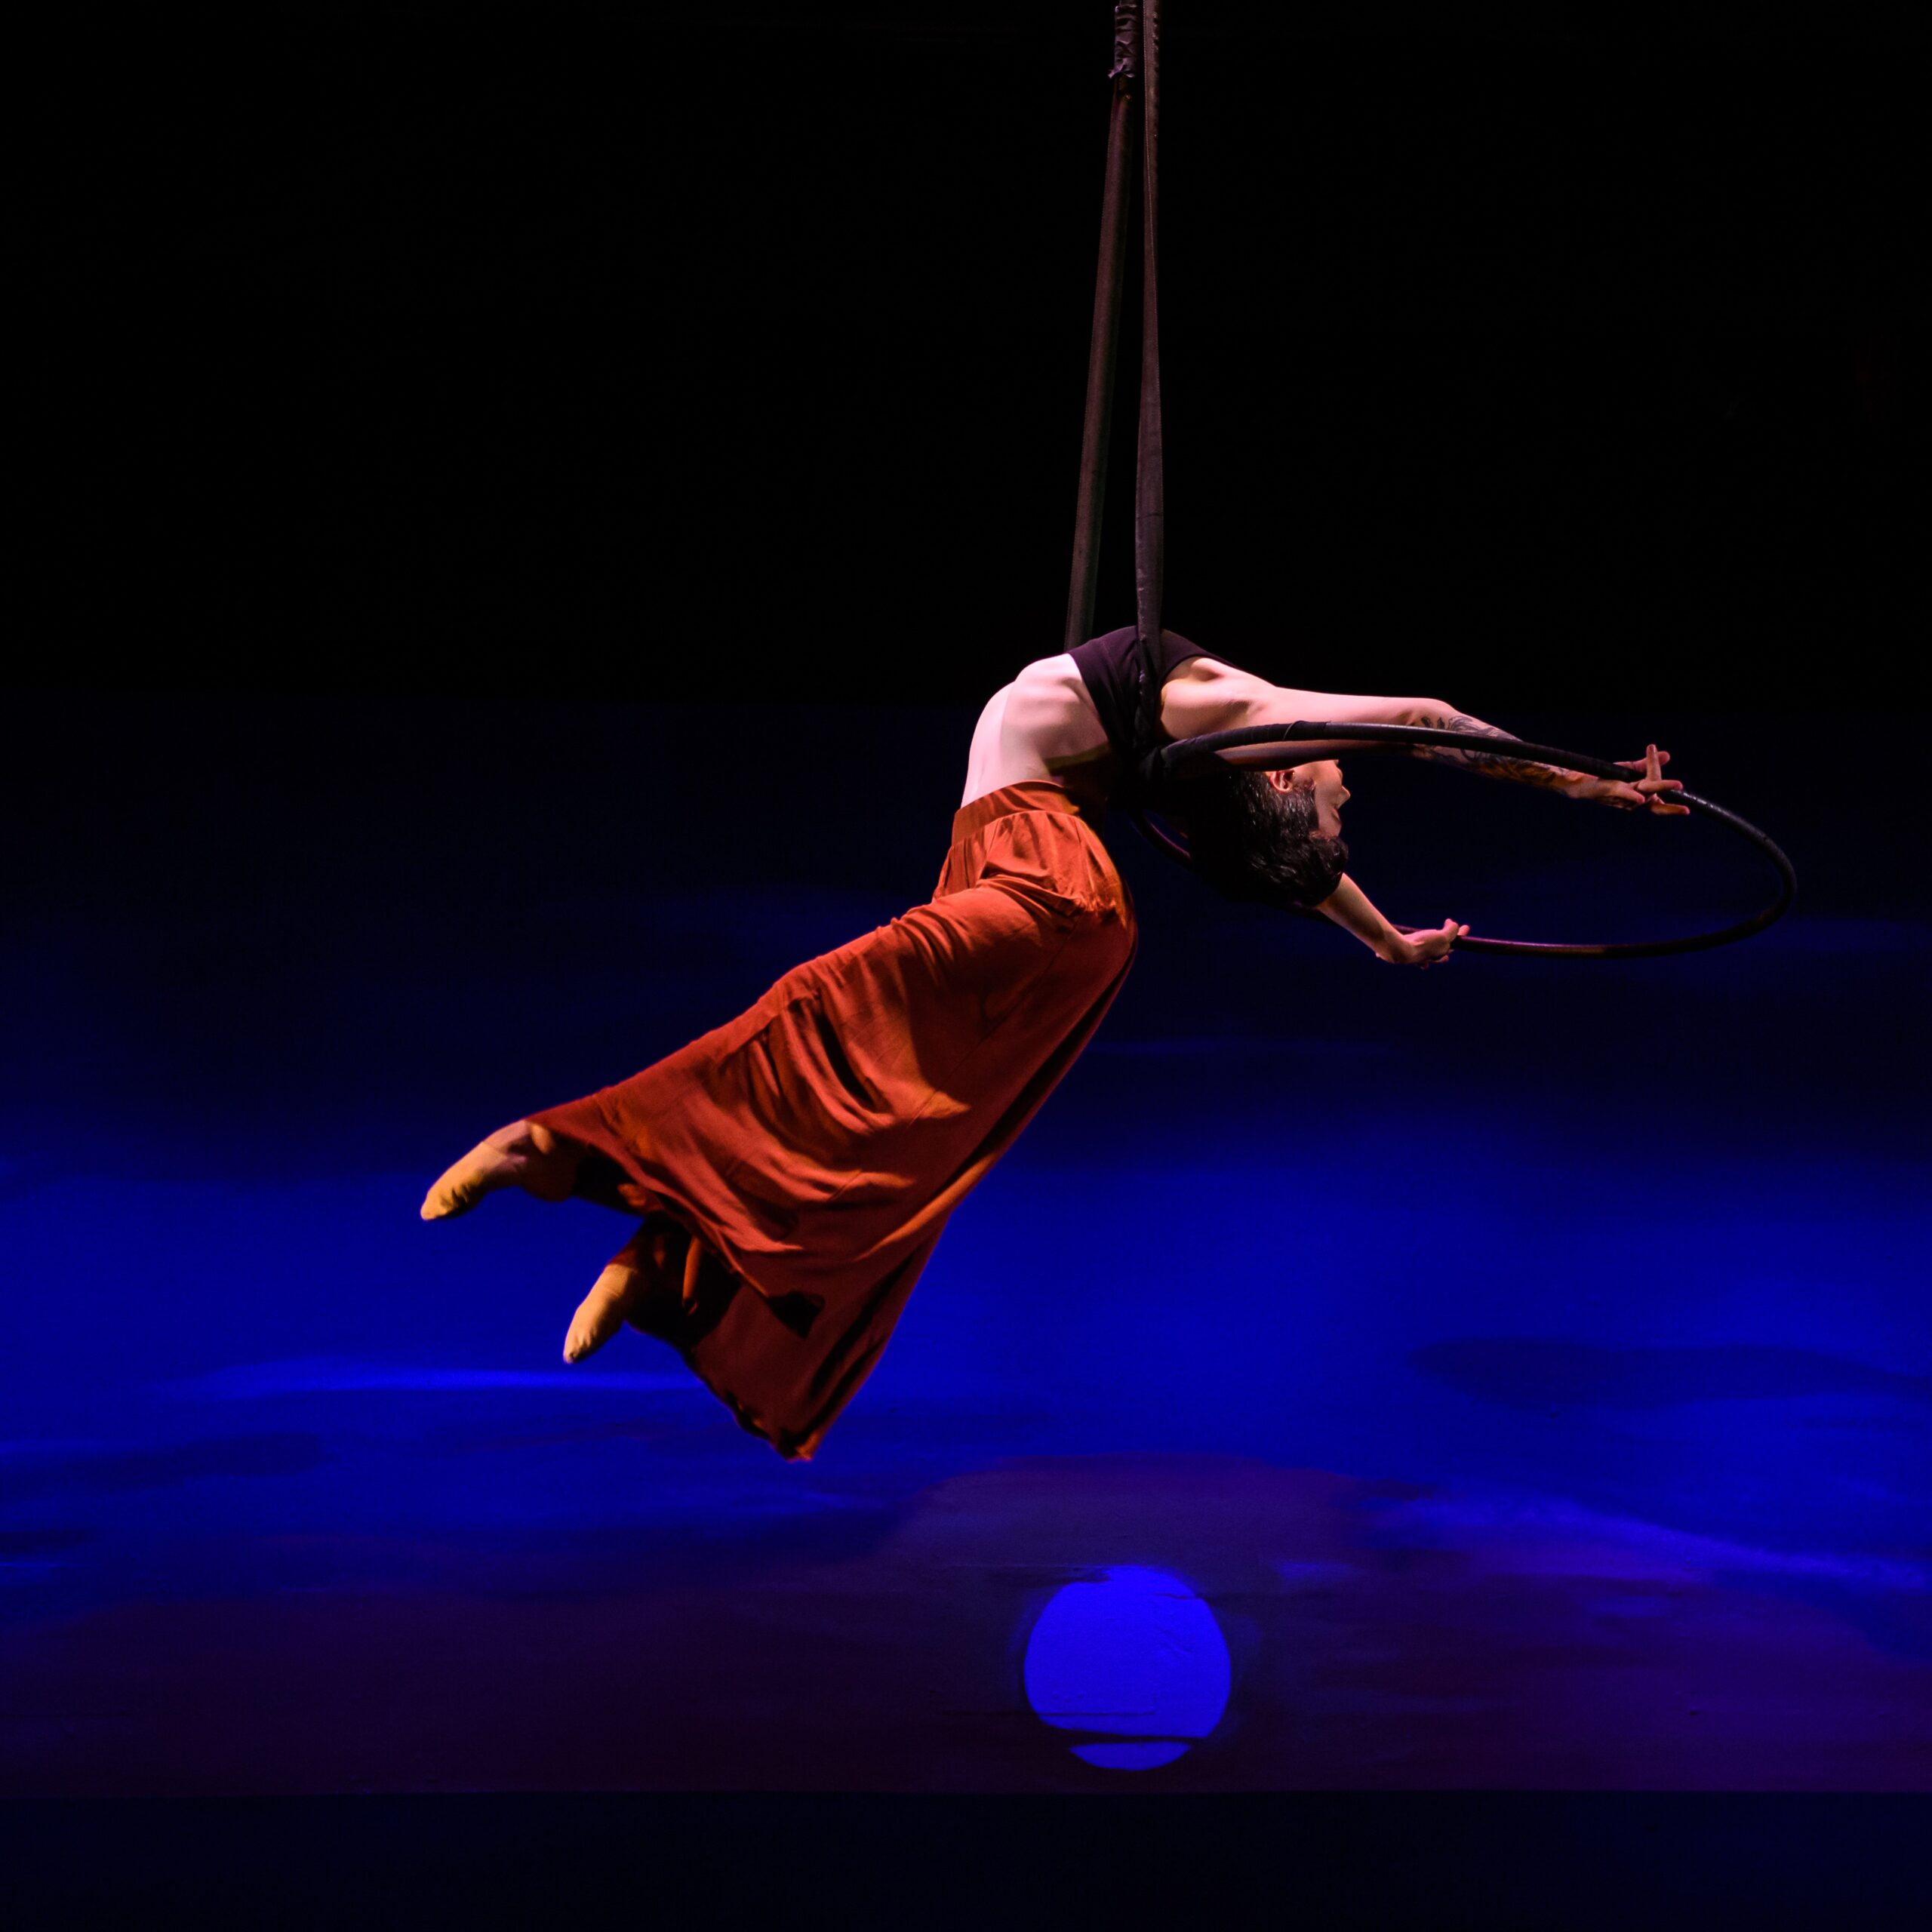 An aerial performer hangs from an aerial hoop in a graceful backbend.